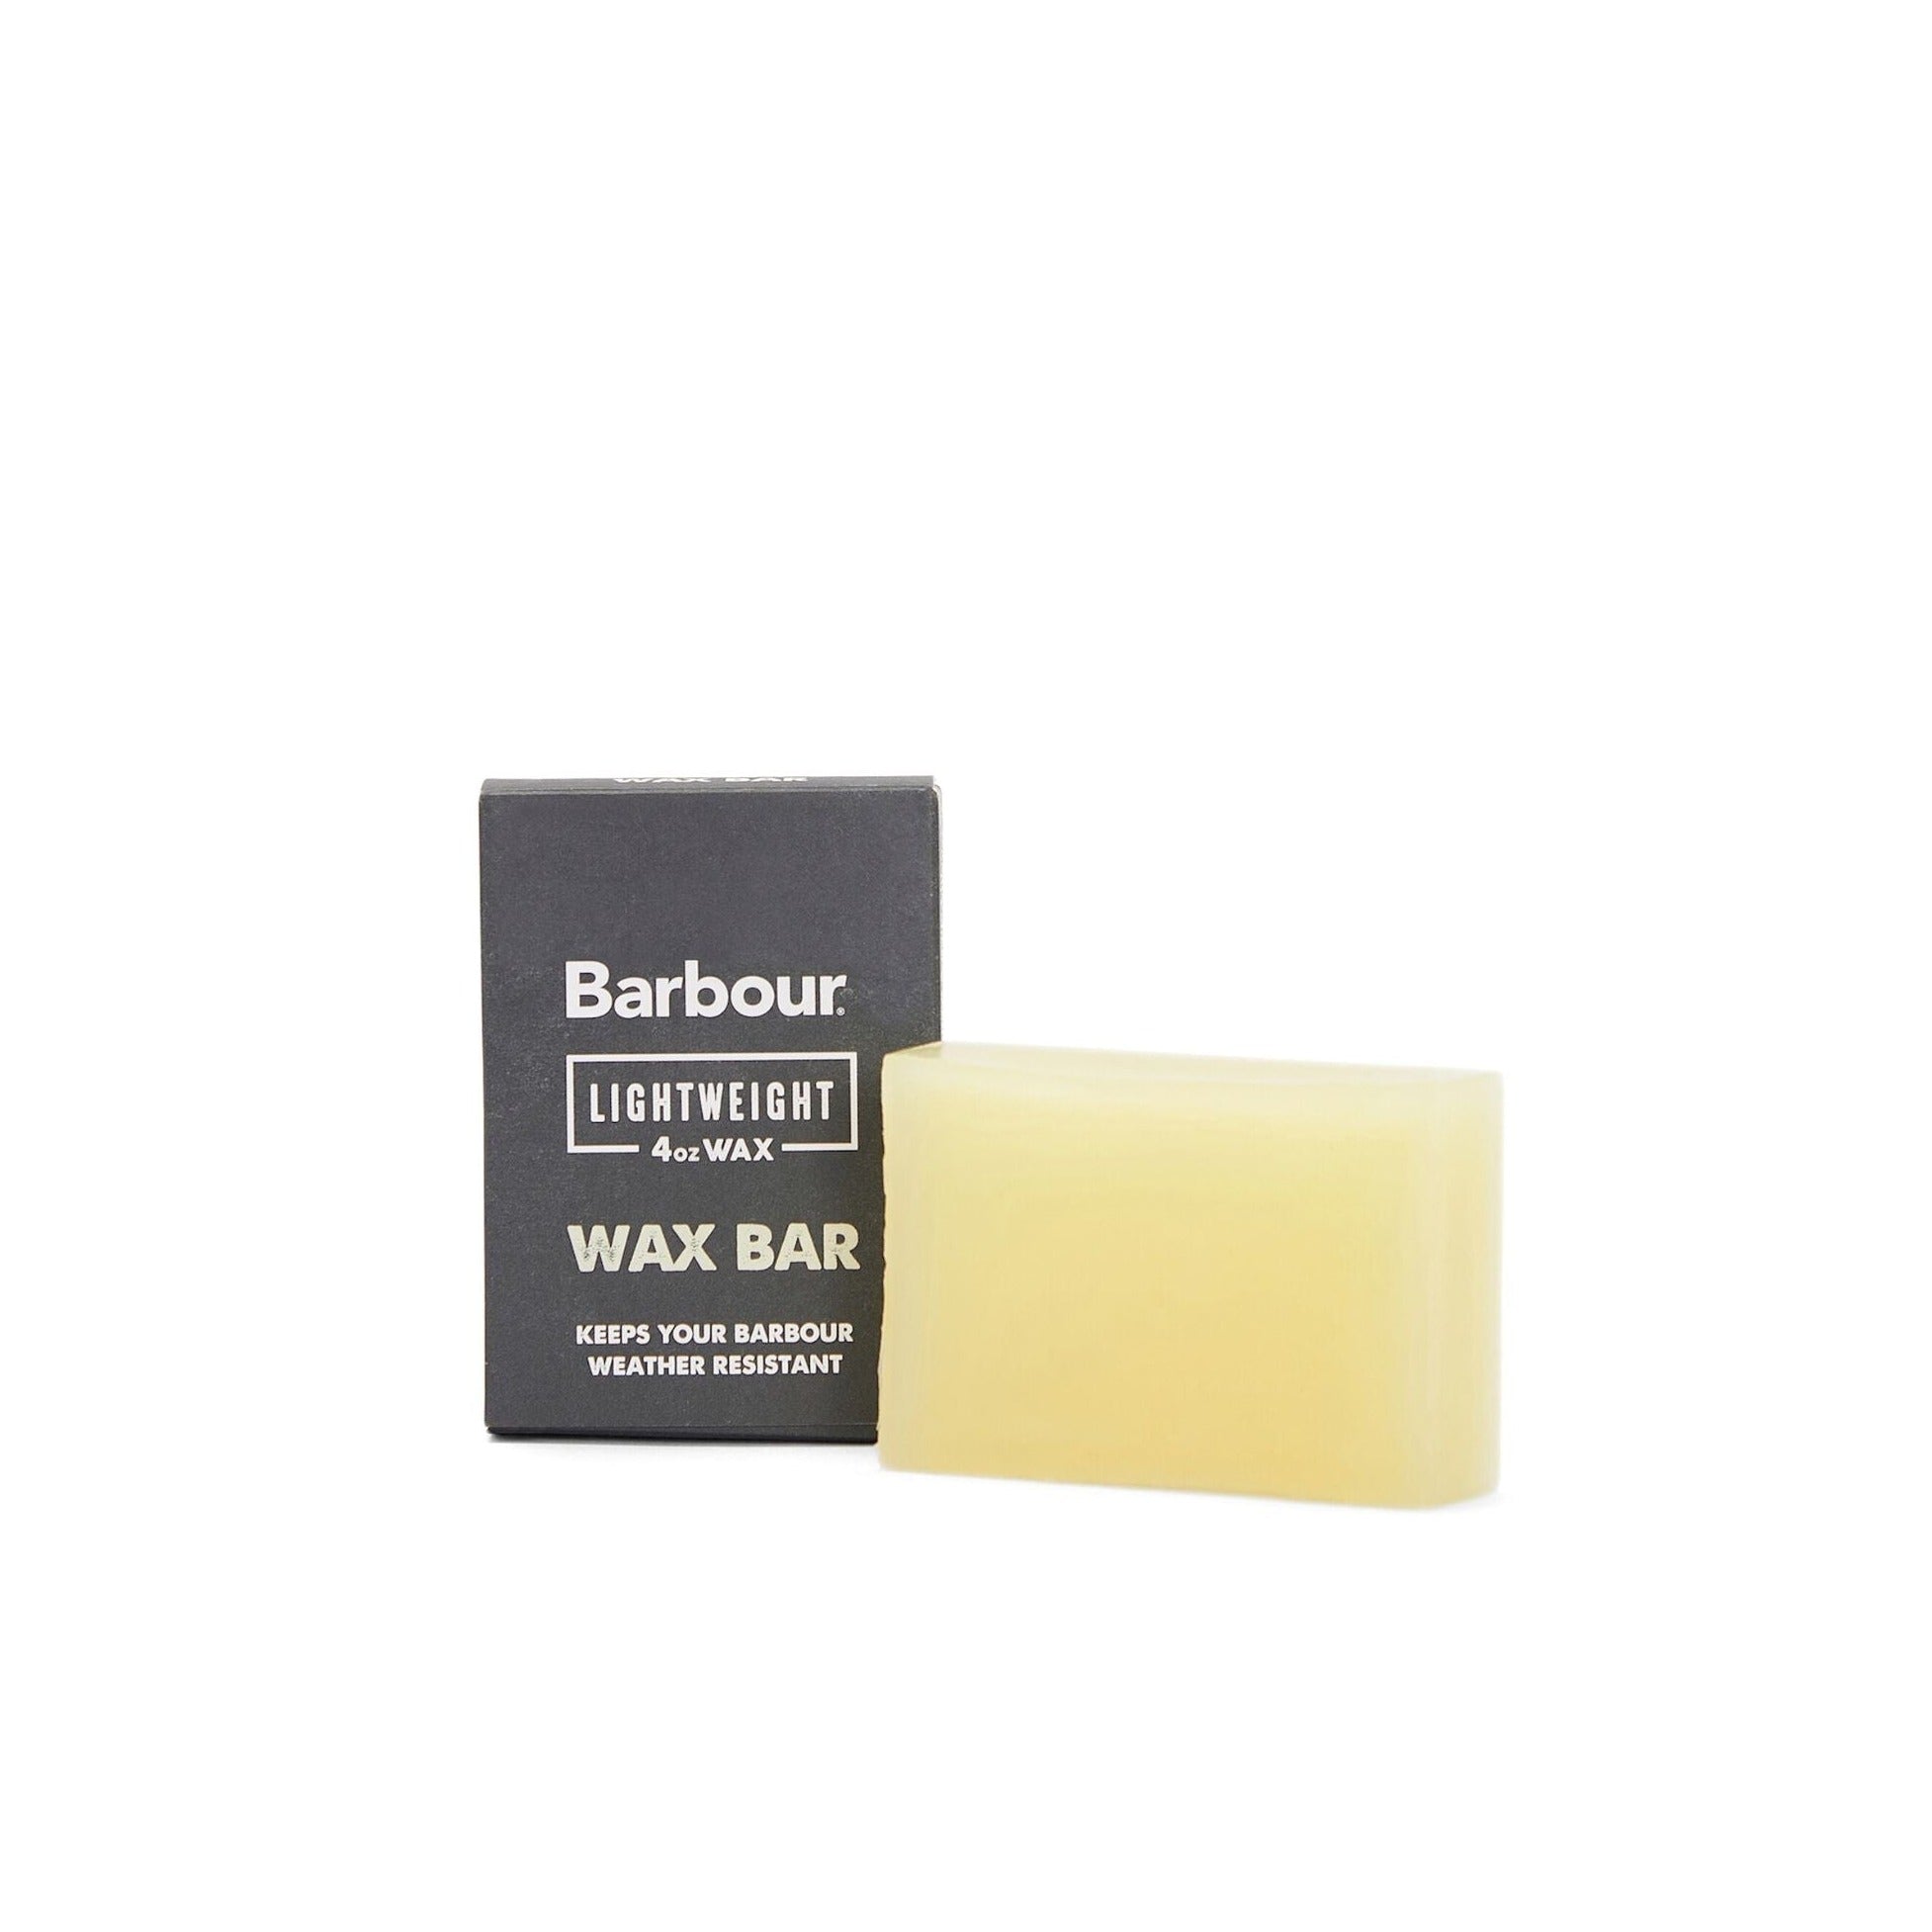 Barbour Lightweight Wax Bar